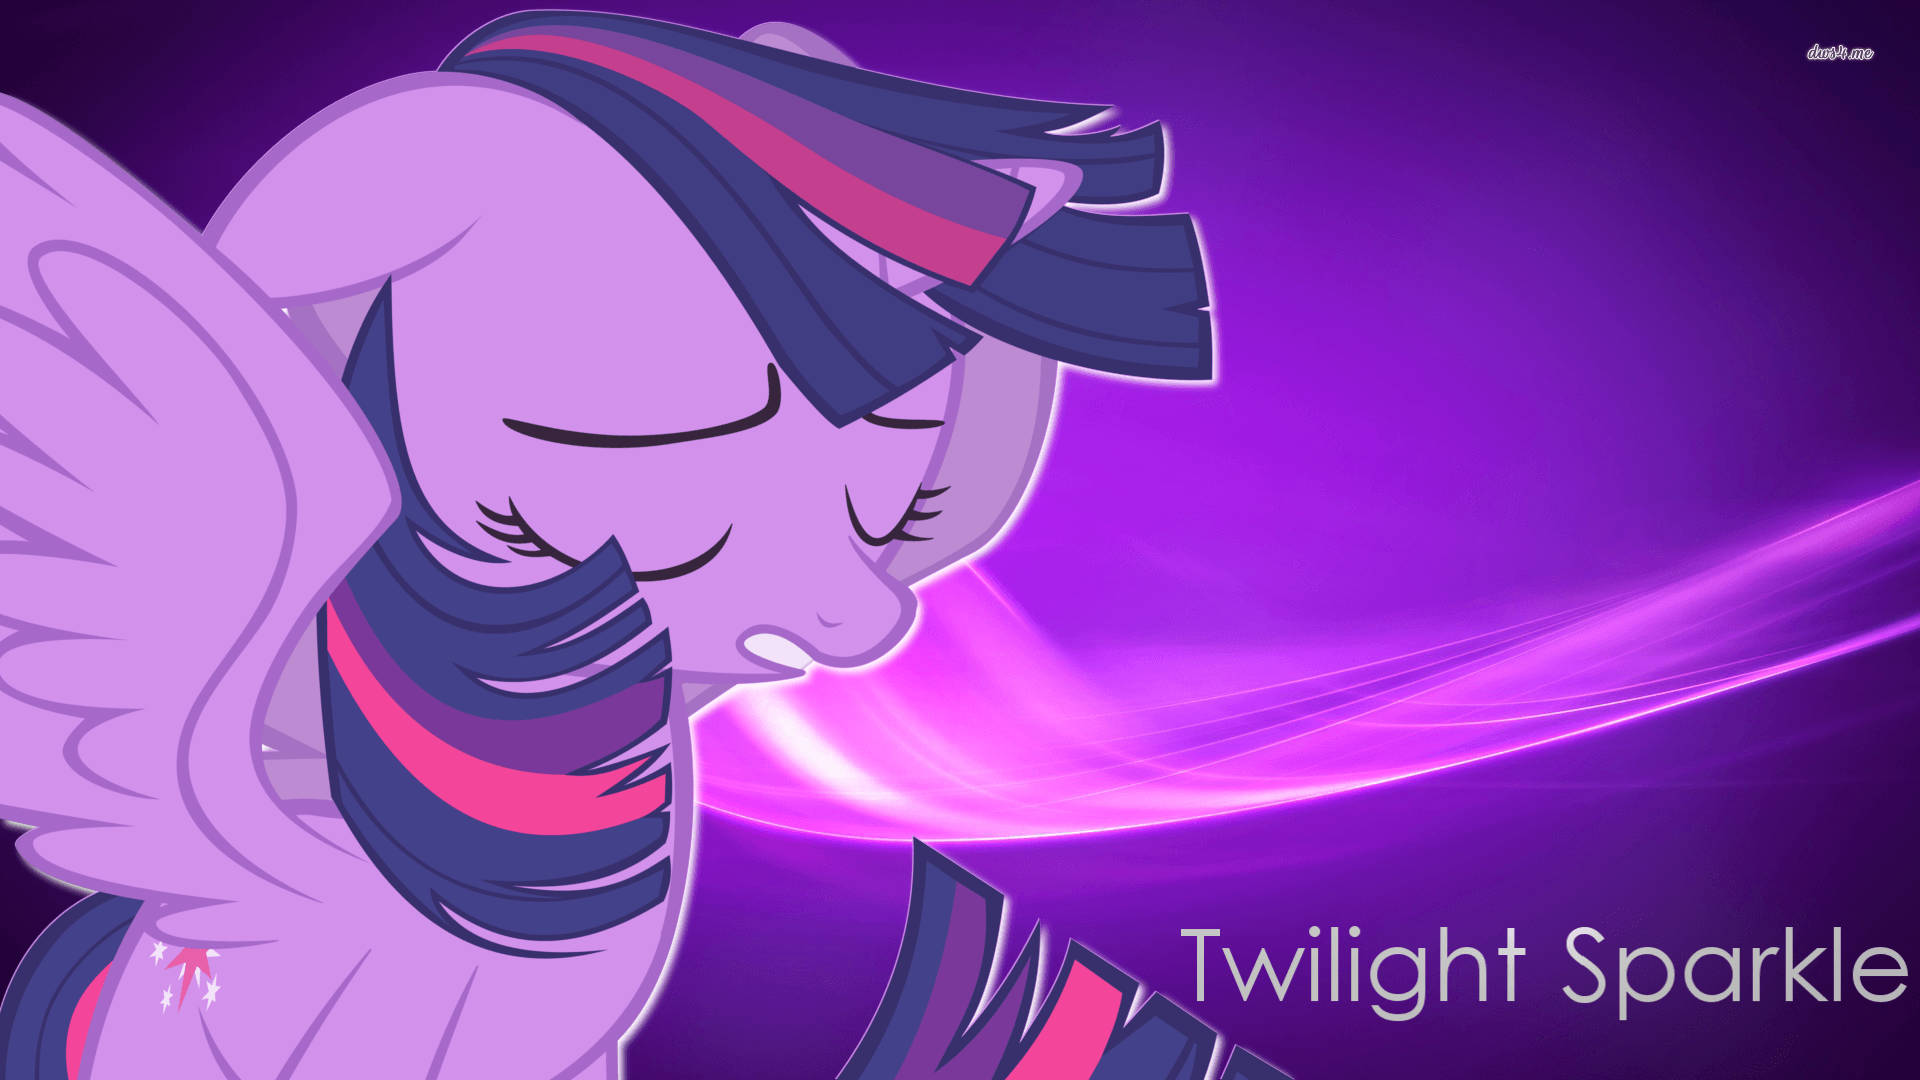 Traurigescartoon-pony Twilight Sparkle Wallpaper